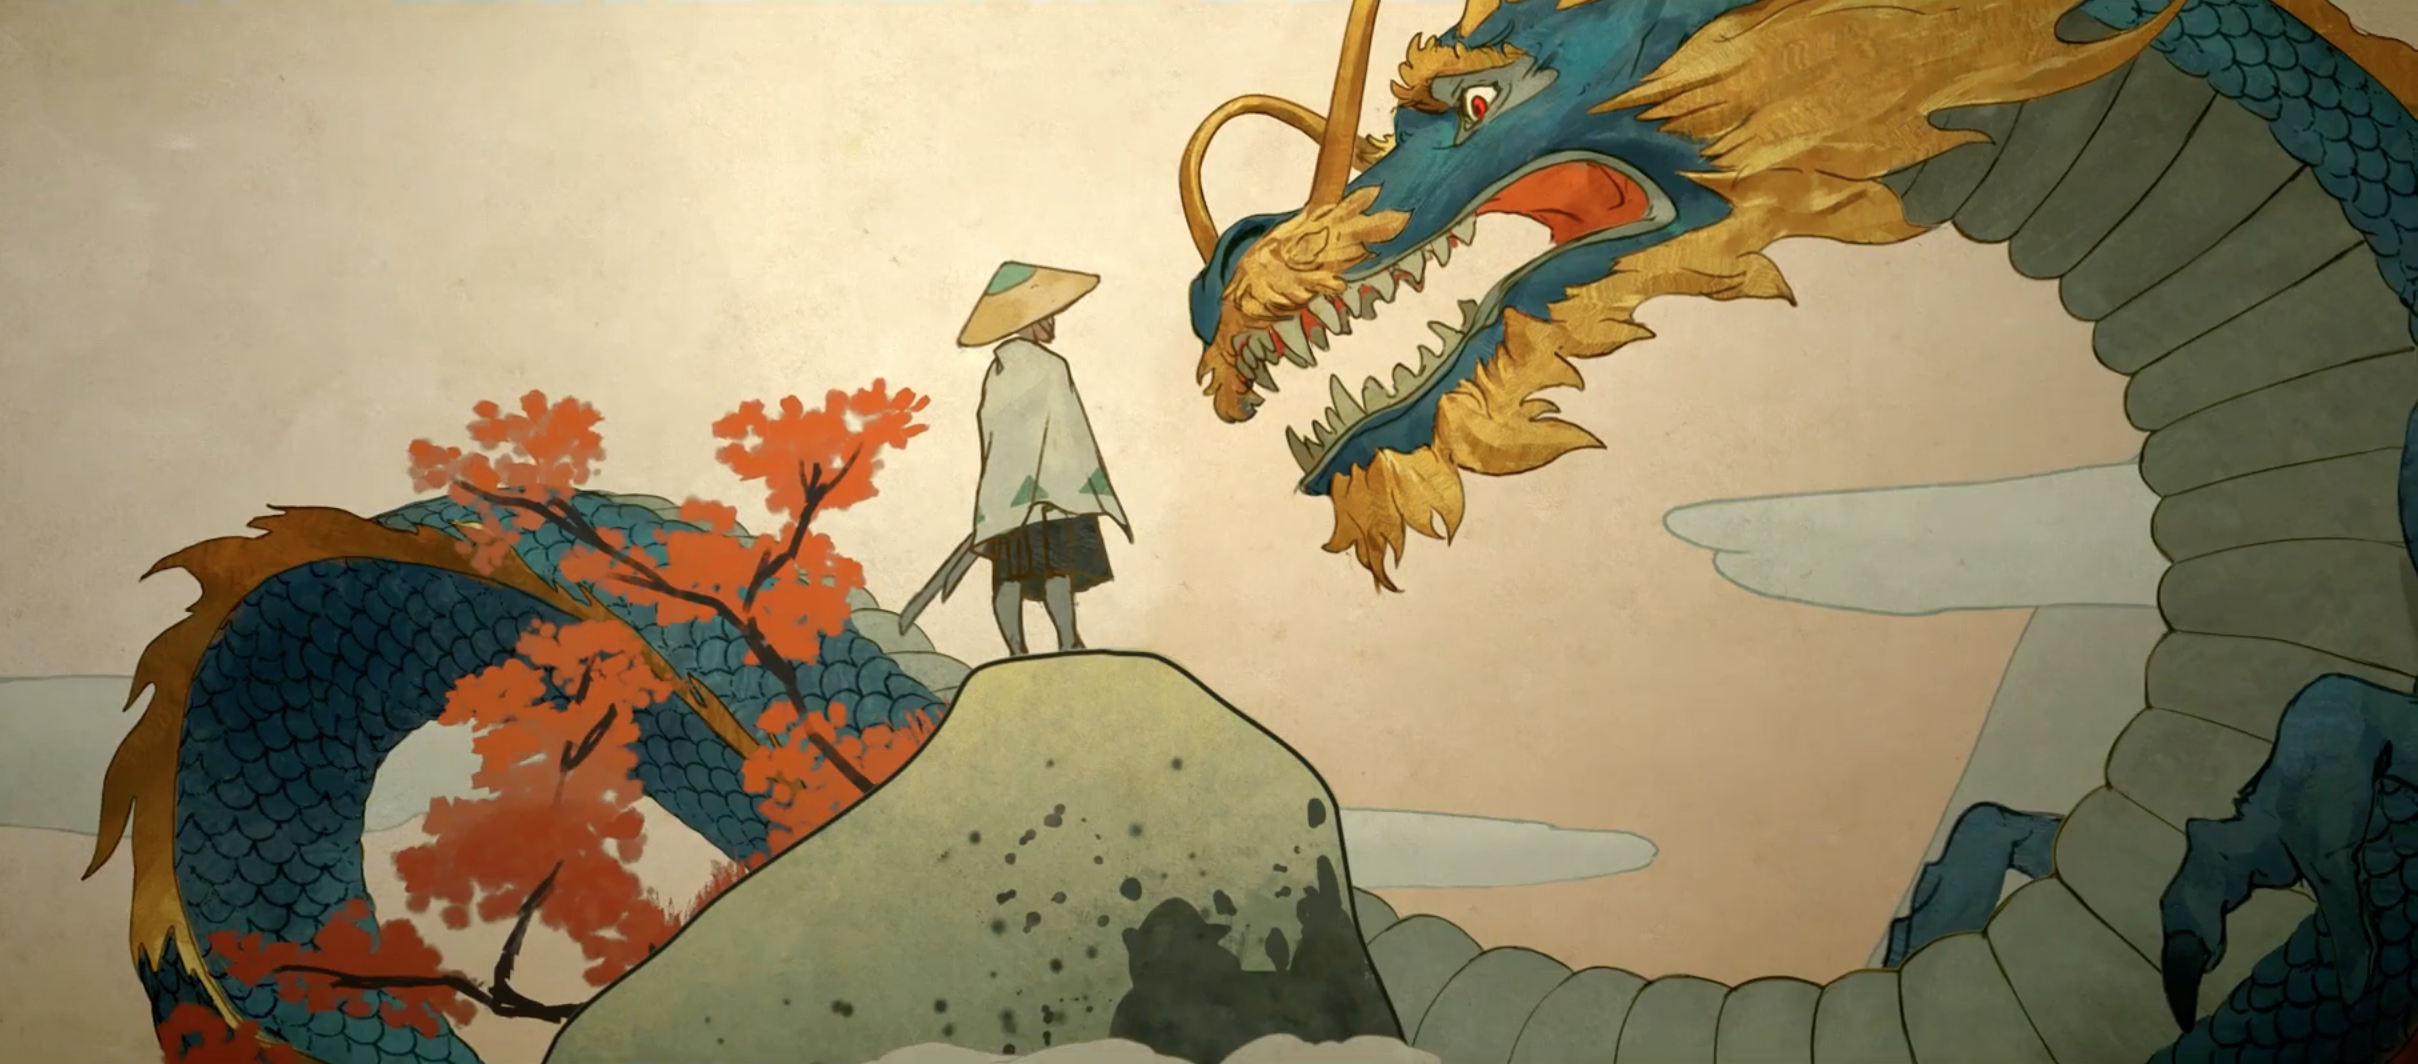 Noul scurtmetraj cinematografic Overwatch explorează relația dintre Hanzo și Genji